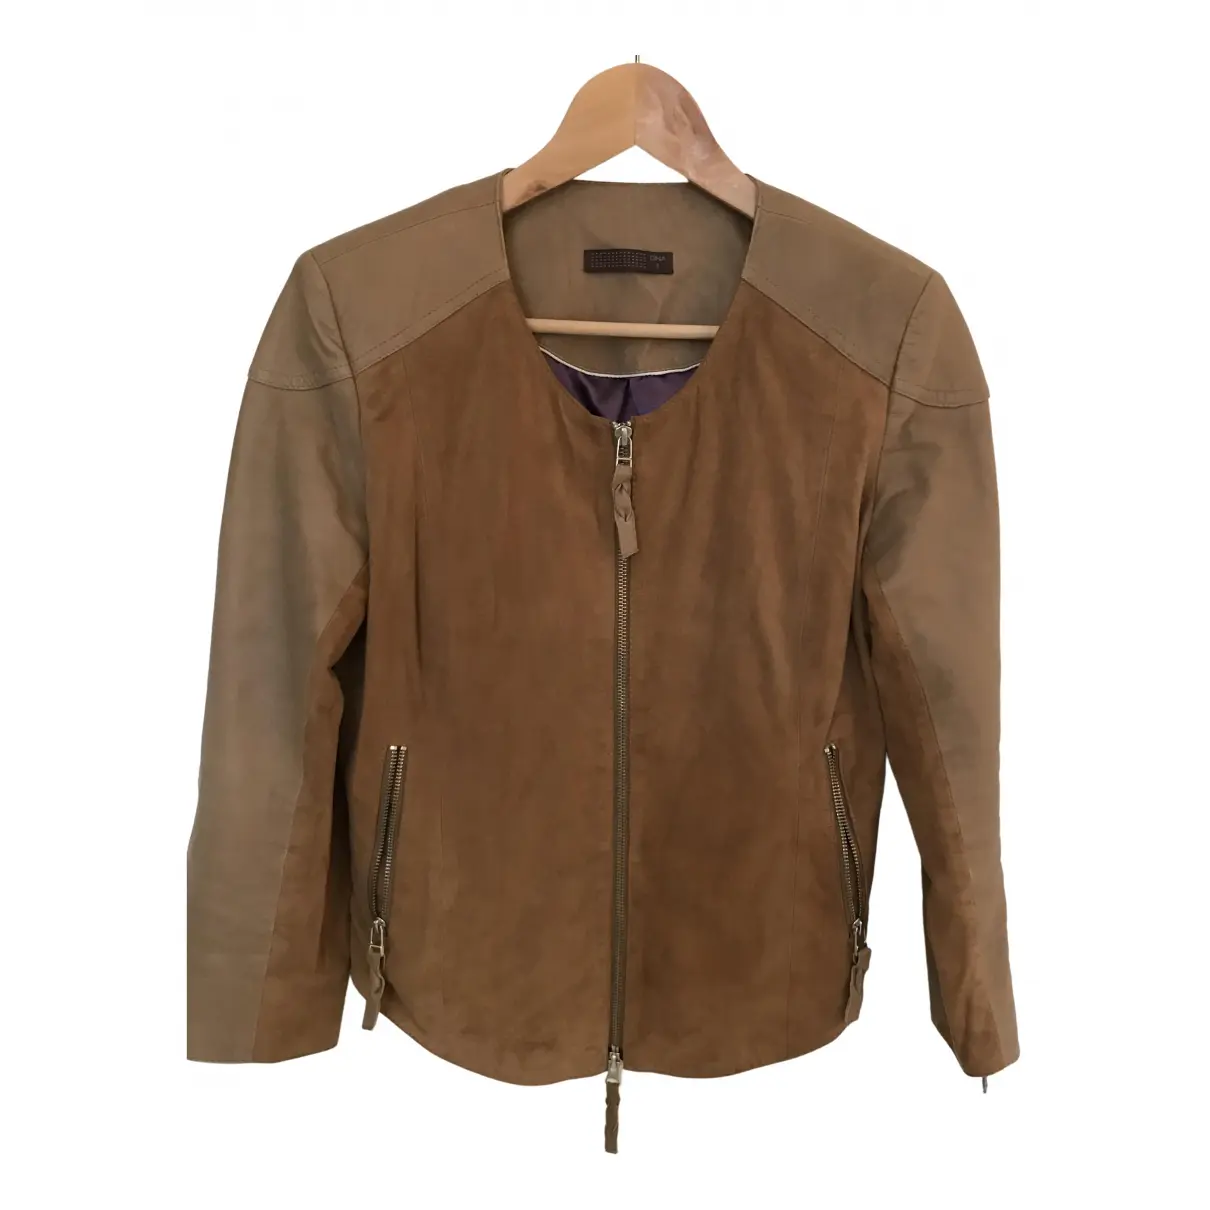 Leather biker jacket Dna